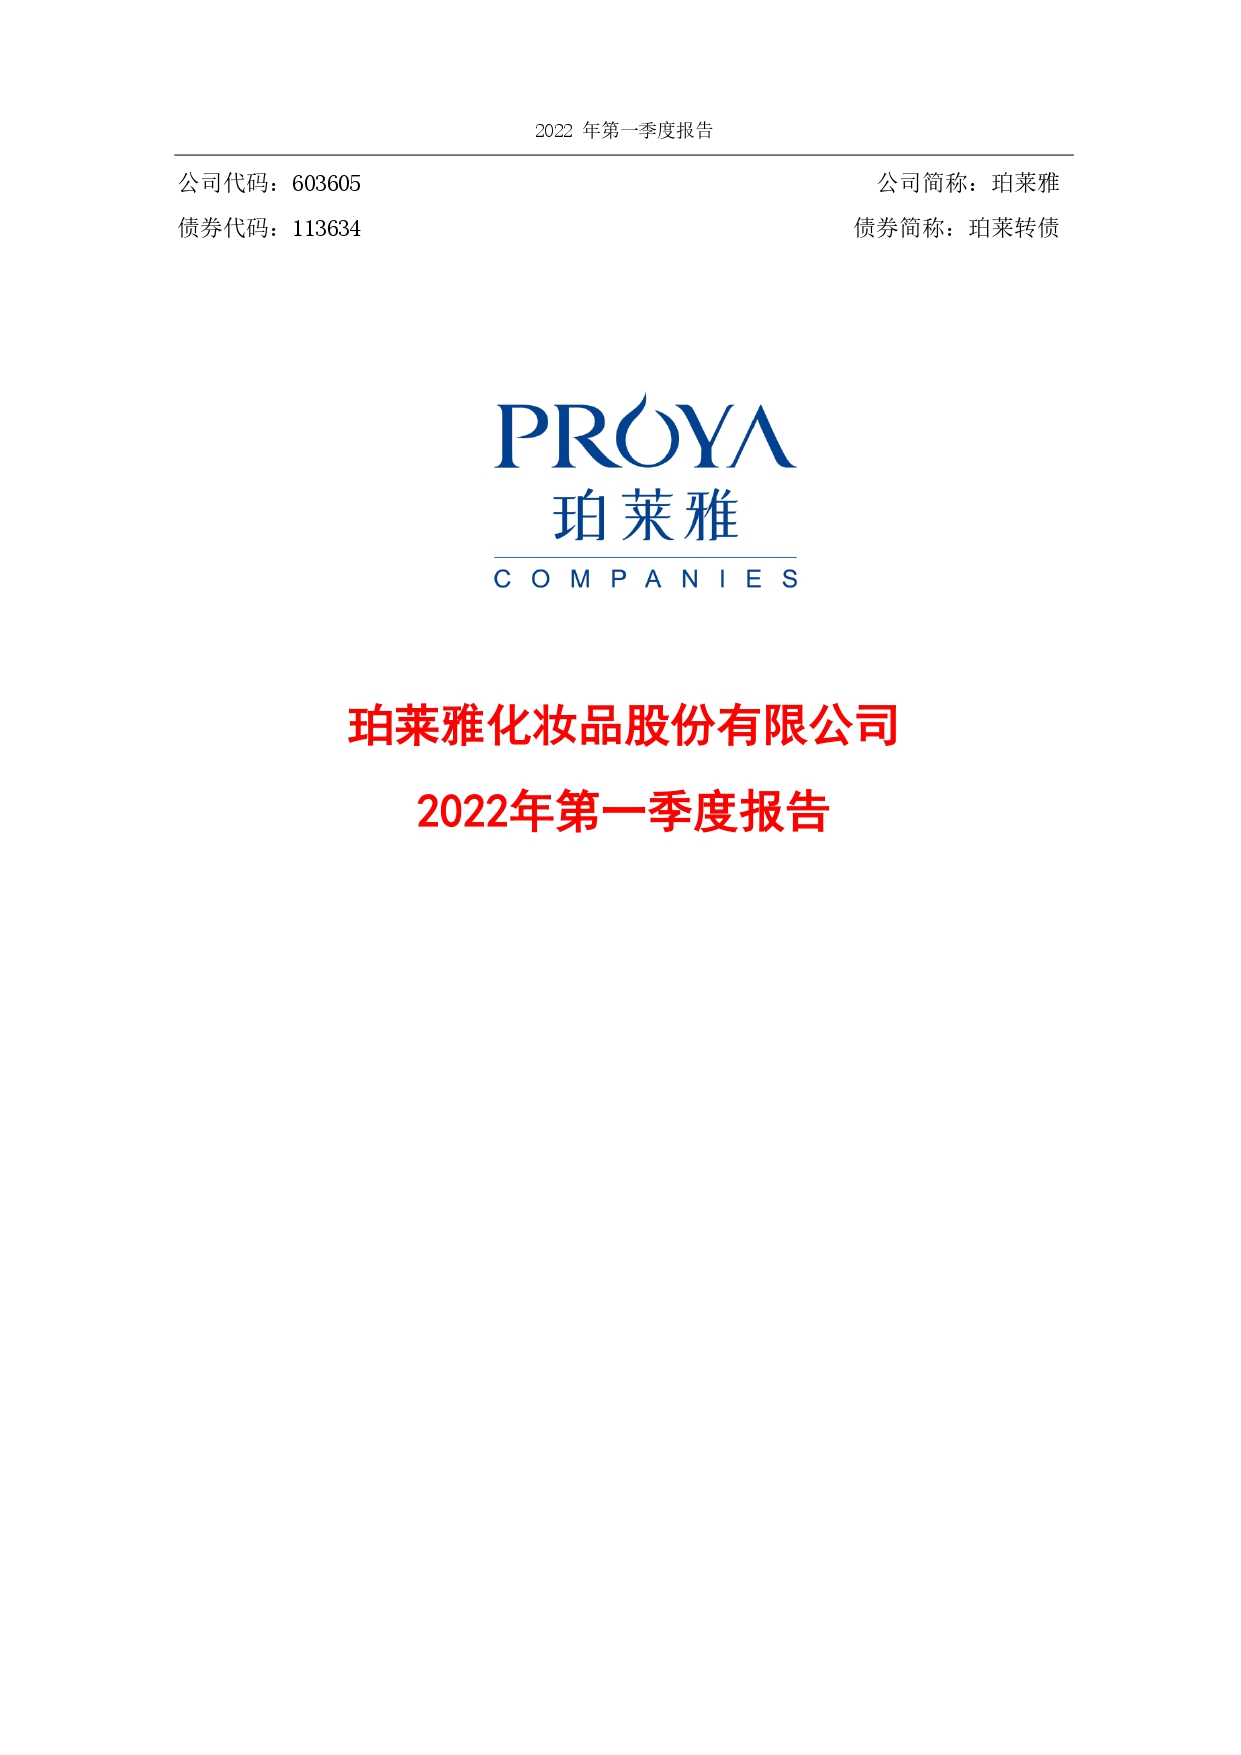 2022年第一季度财务报告封面_page-0001.jpg